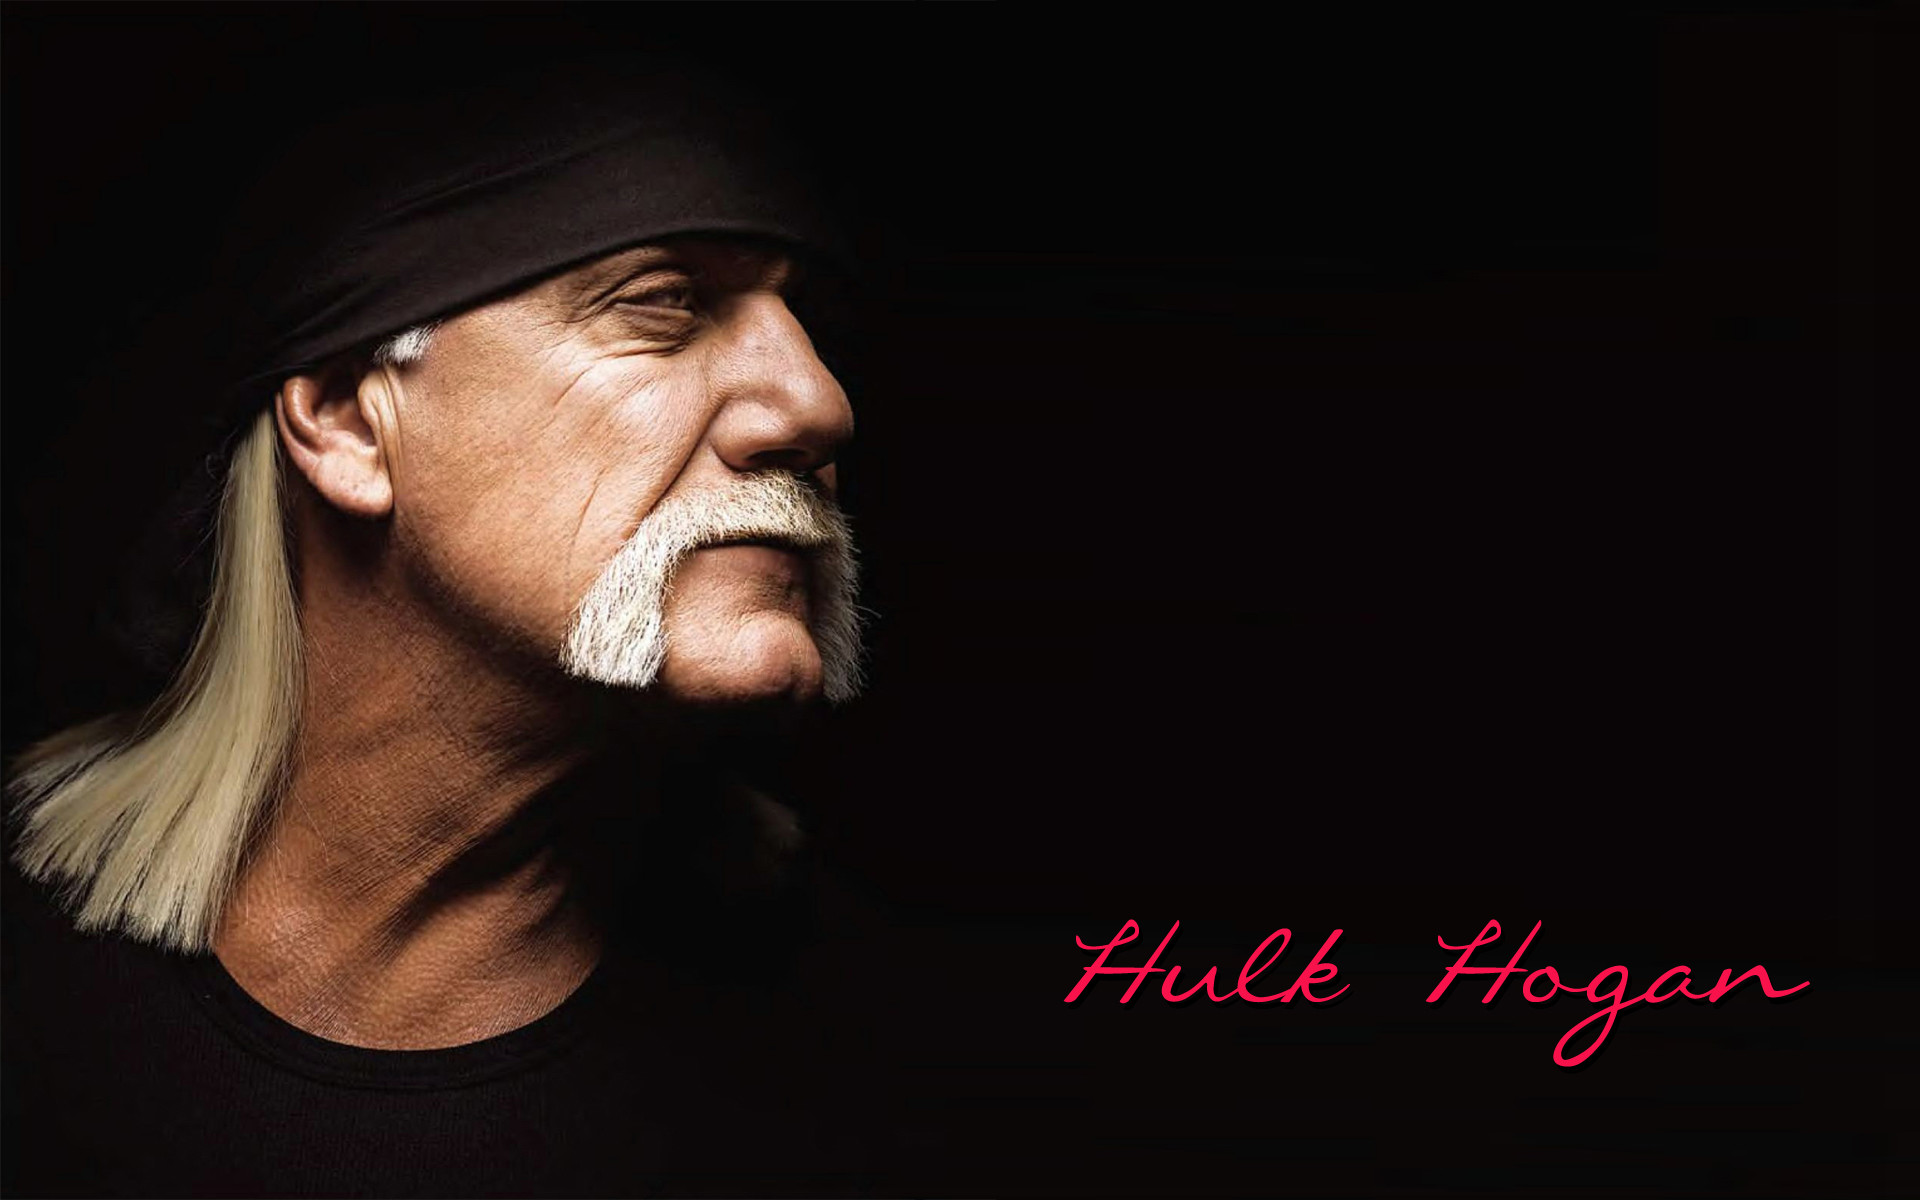 1920x1200 Hulk Hogan wallpaper | WWE wallpaper | Pinterest | Hulk hogan, Hulk and  Wallpaper